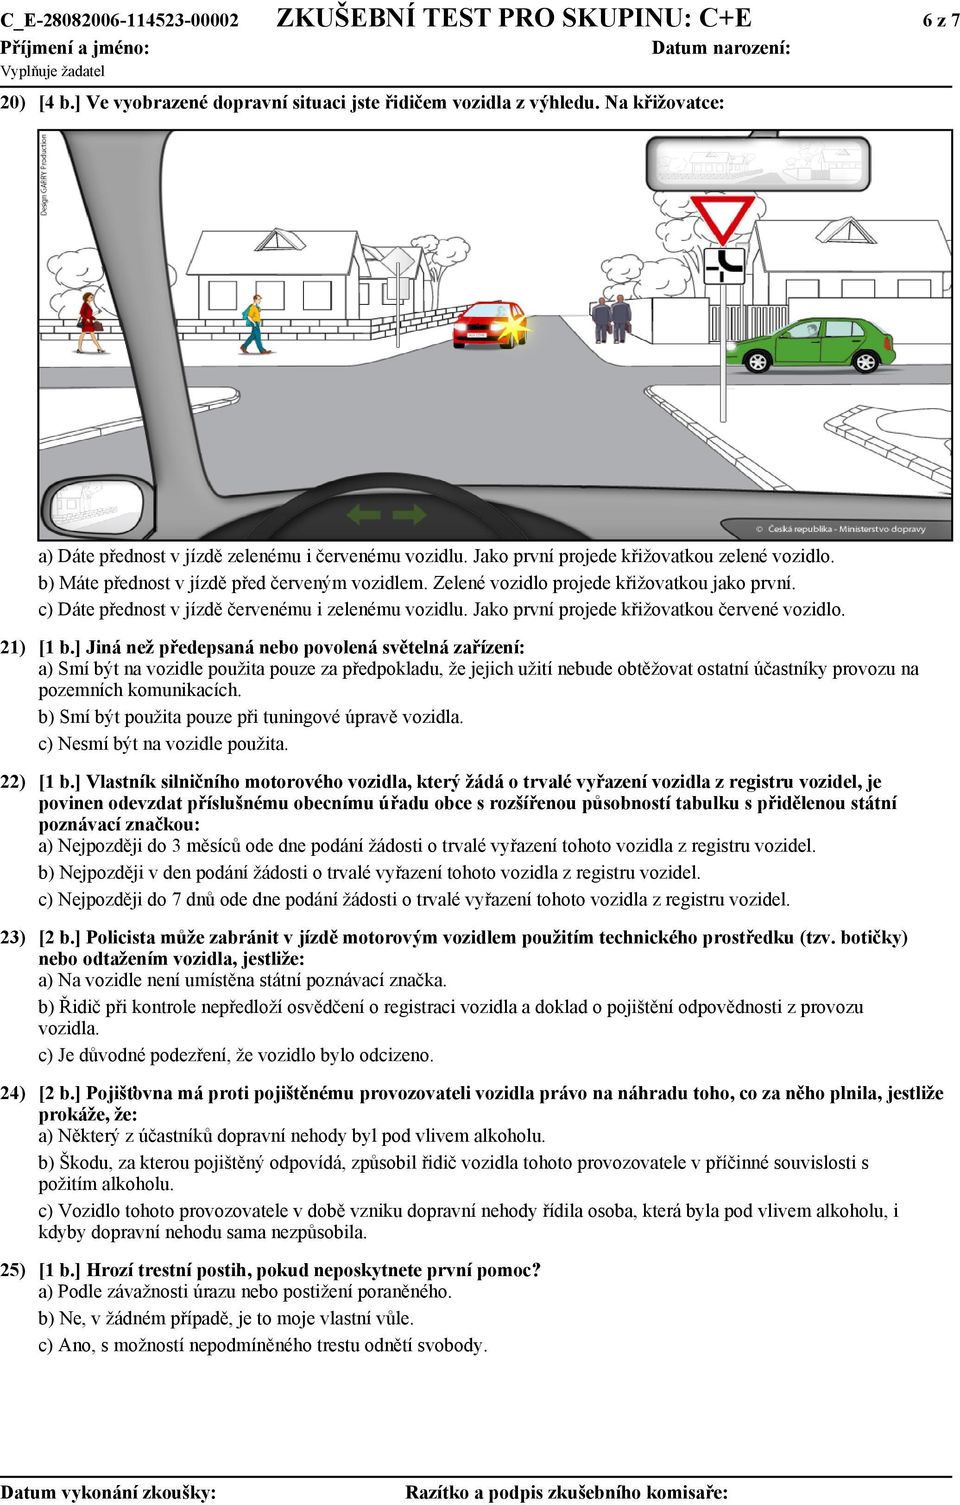 Zelené vozidlo projede křižovatkou jako první. c) Dáte přednost v jízdě červenému i zelenému vozidlu. Jako první projede křižovatkou červené vozidlo. 21) [1 b.